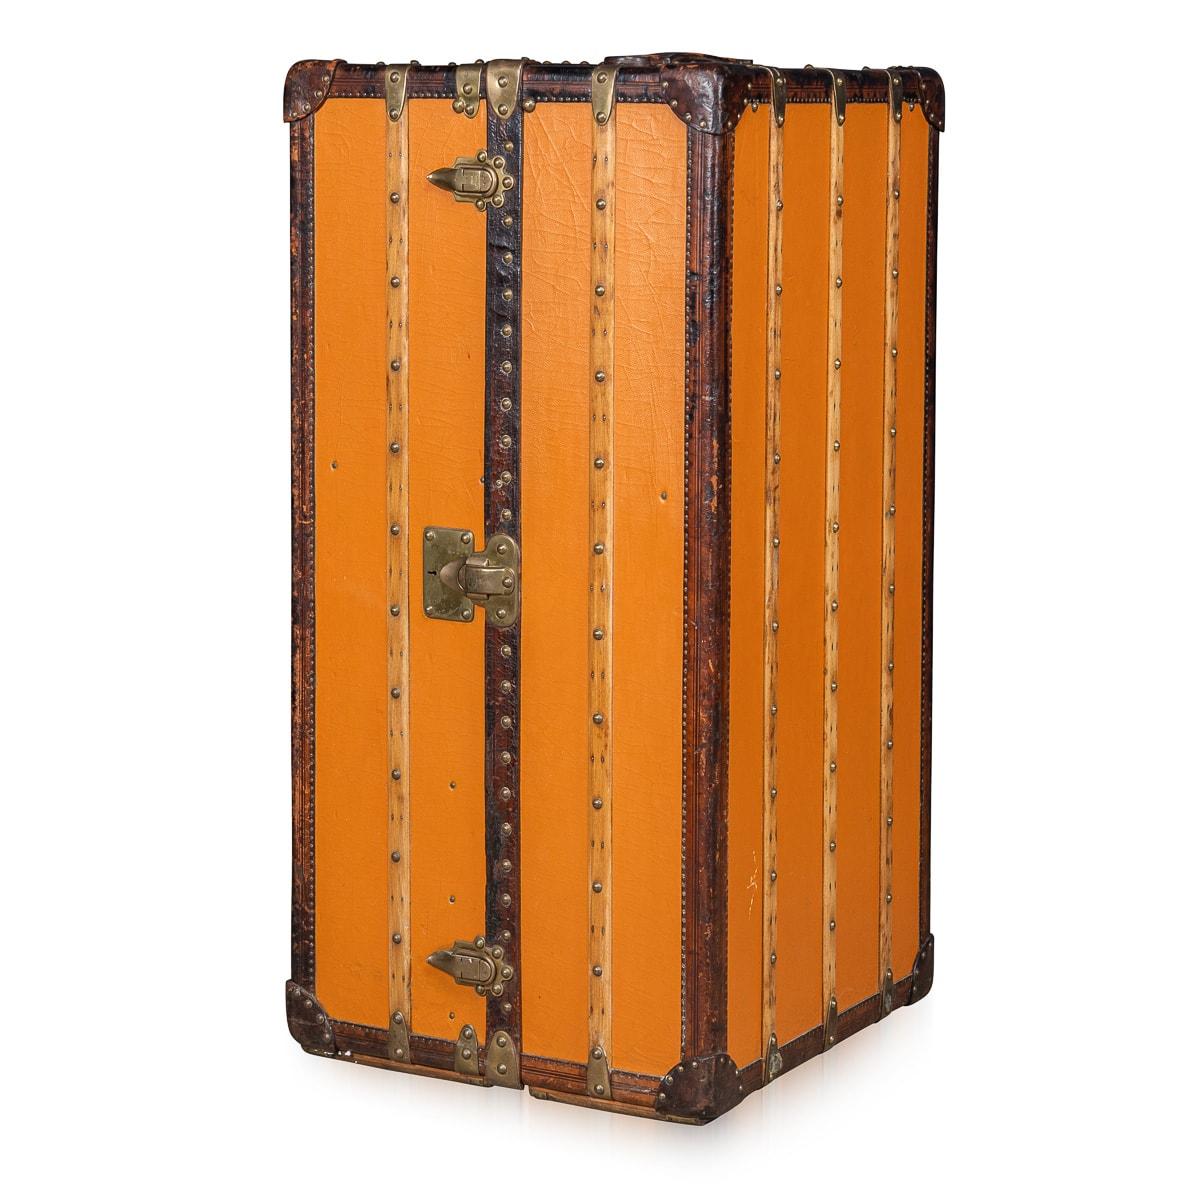 Entrez dans le monde du luxe vintage avec cette malle-armoire exceptionnellement rare de Louis Vuitton, datant du début du 20e siècle, vers 1900-1910. Revêtue de la toile orange distinctive 